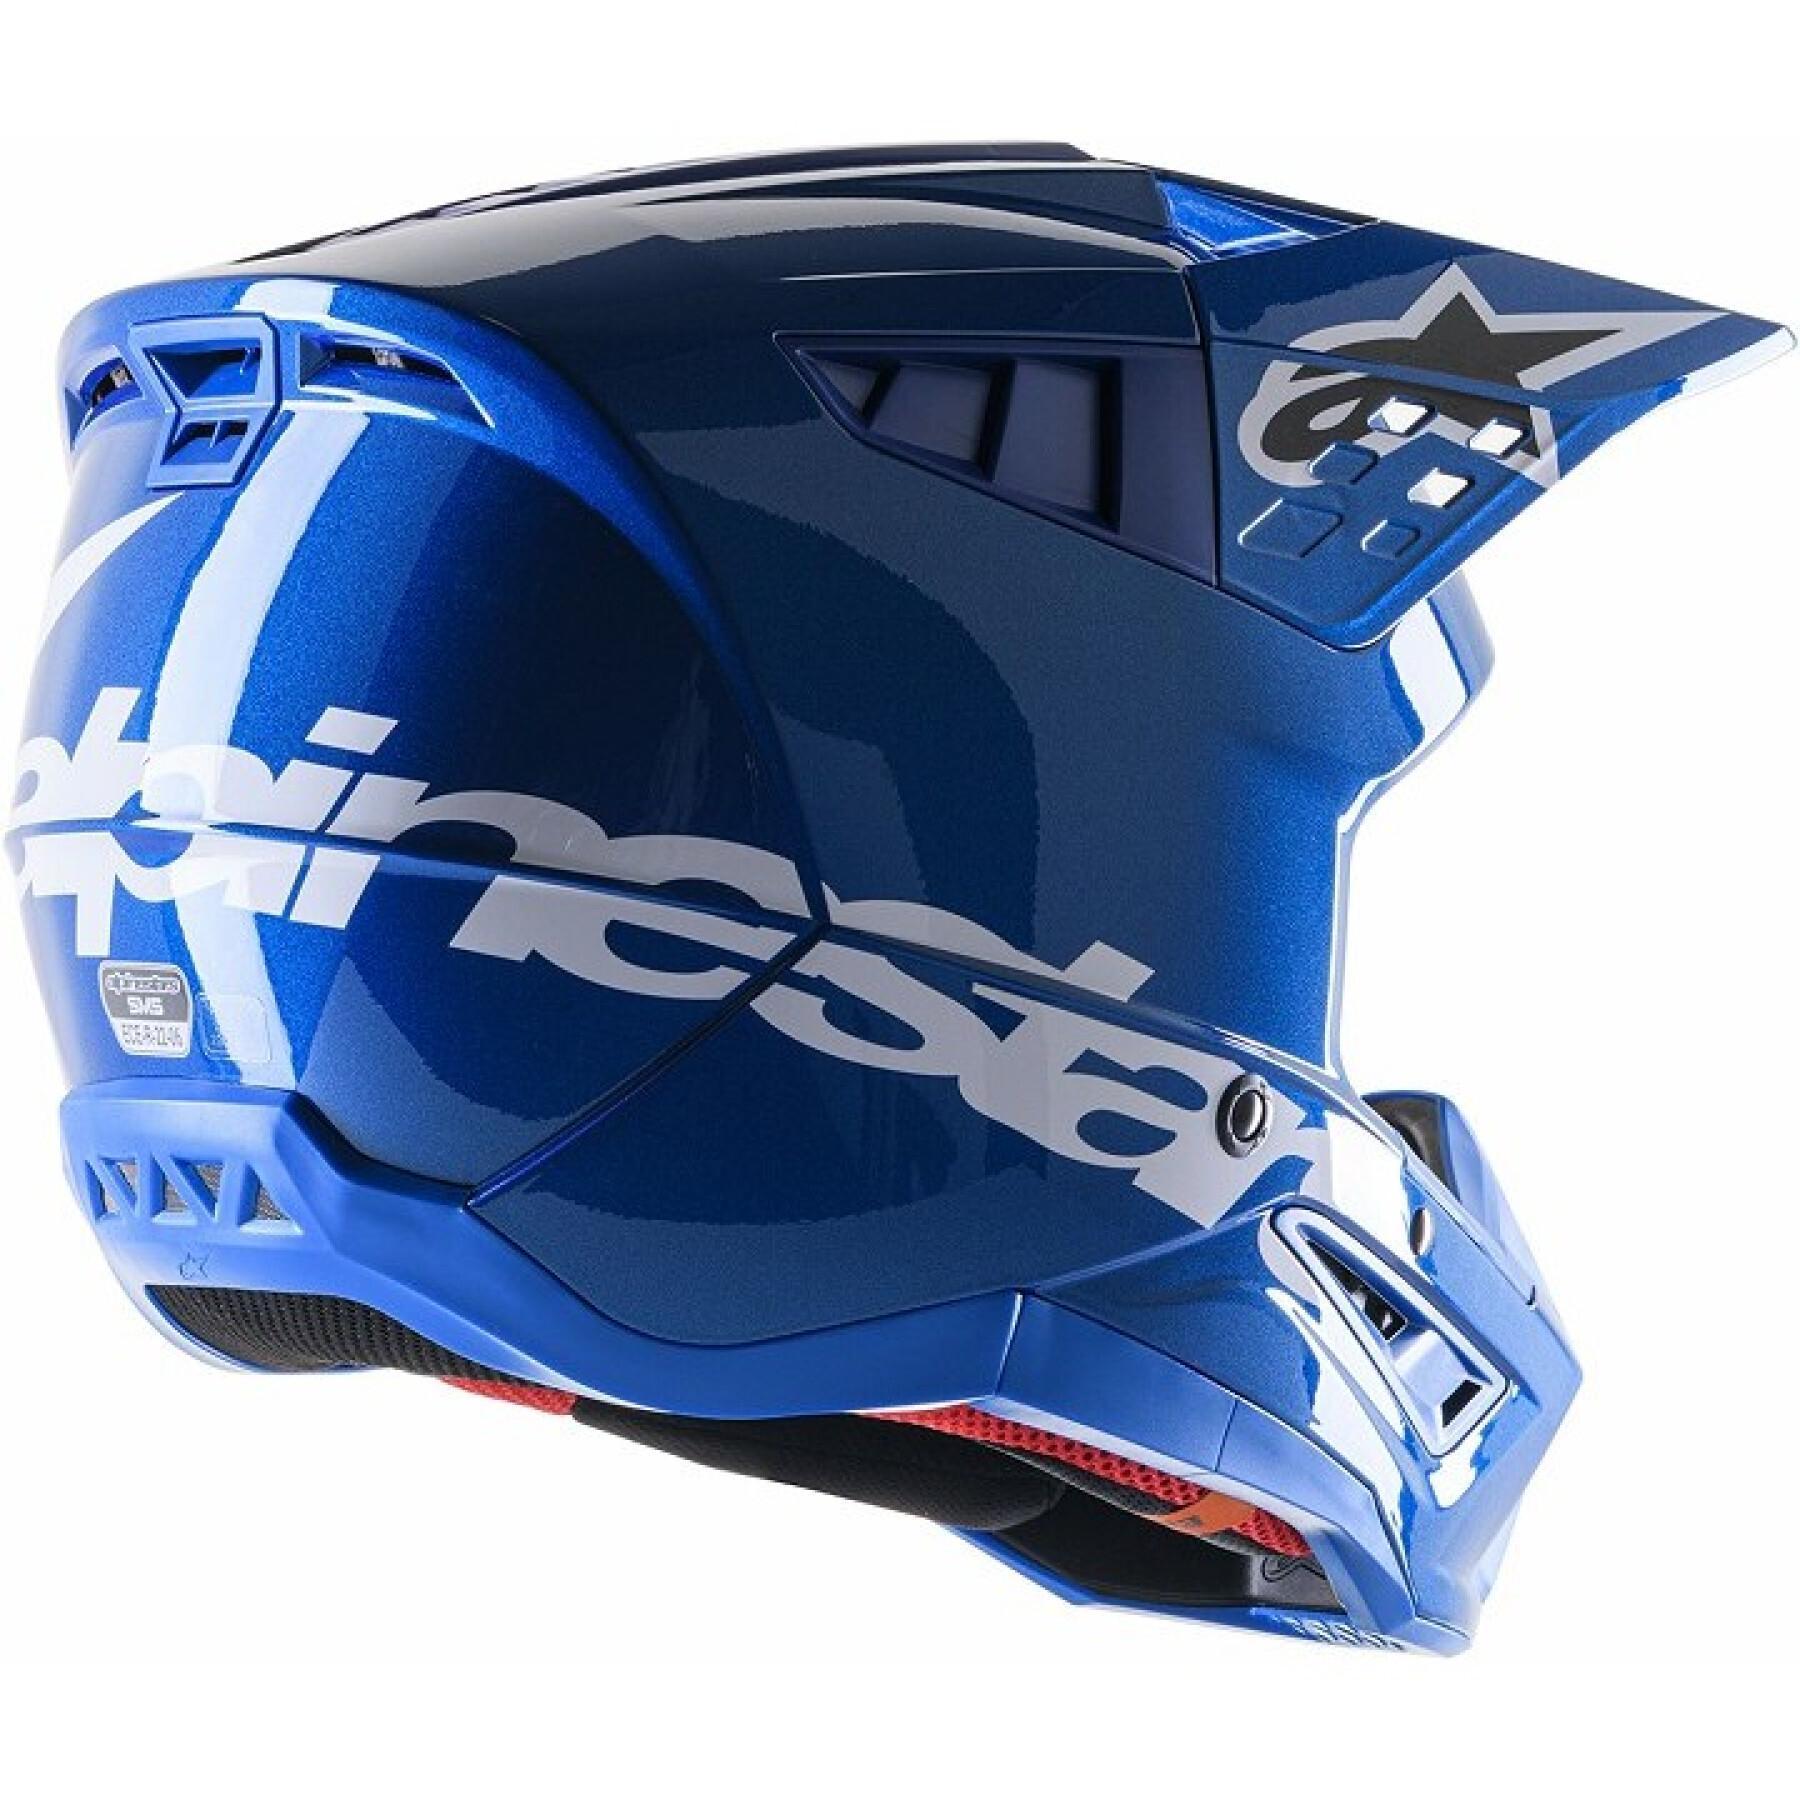 Full face motorcycle helmet Alpinestars SM5 Corp